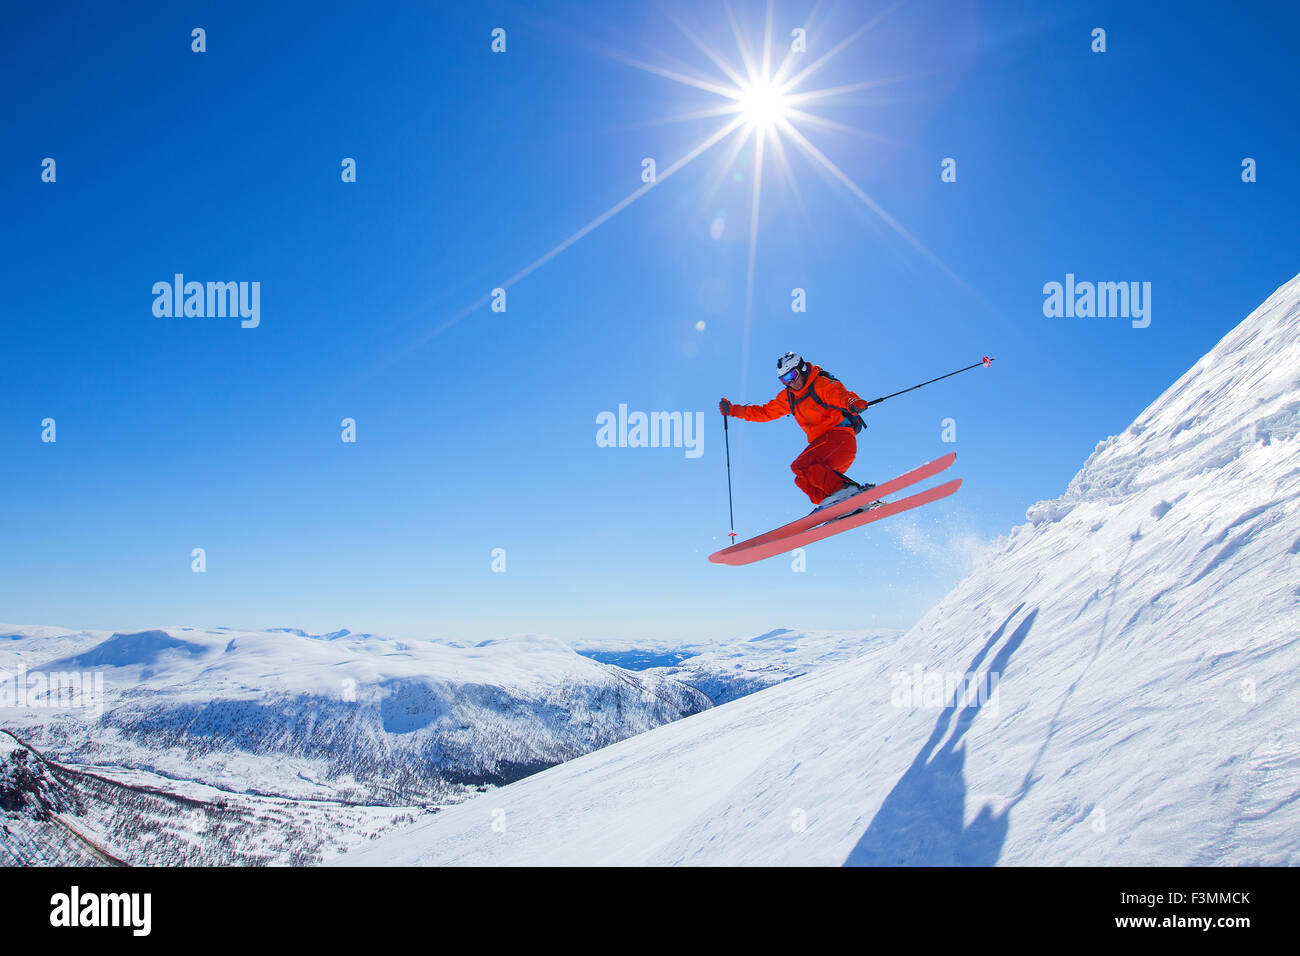 Un homme dans un costume rouge freerider est un saut d'une crête de neige. Le soleil brille, le ciel est bleu. Banque D'Images